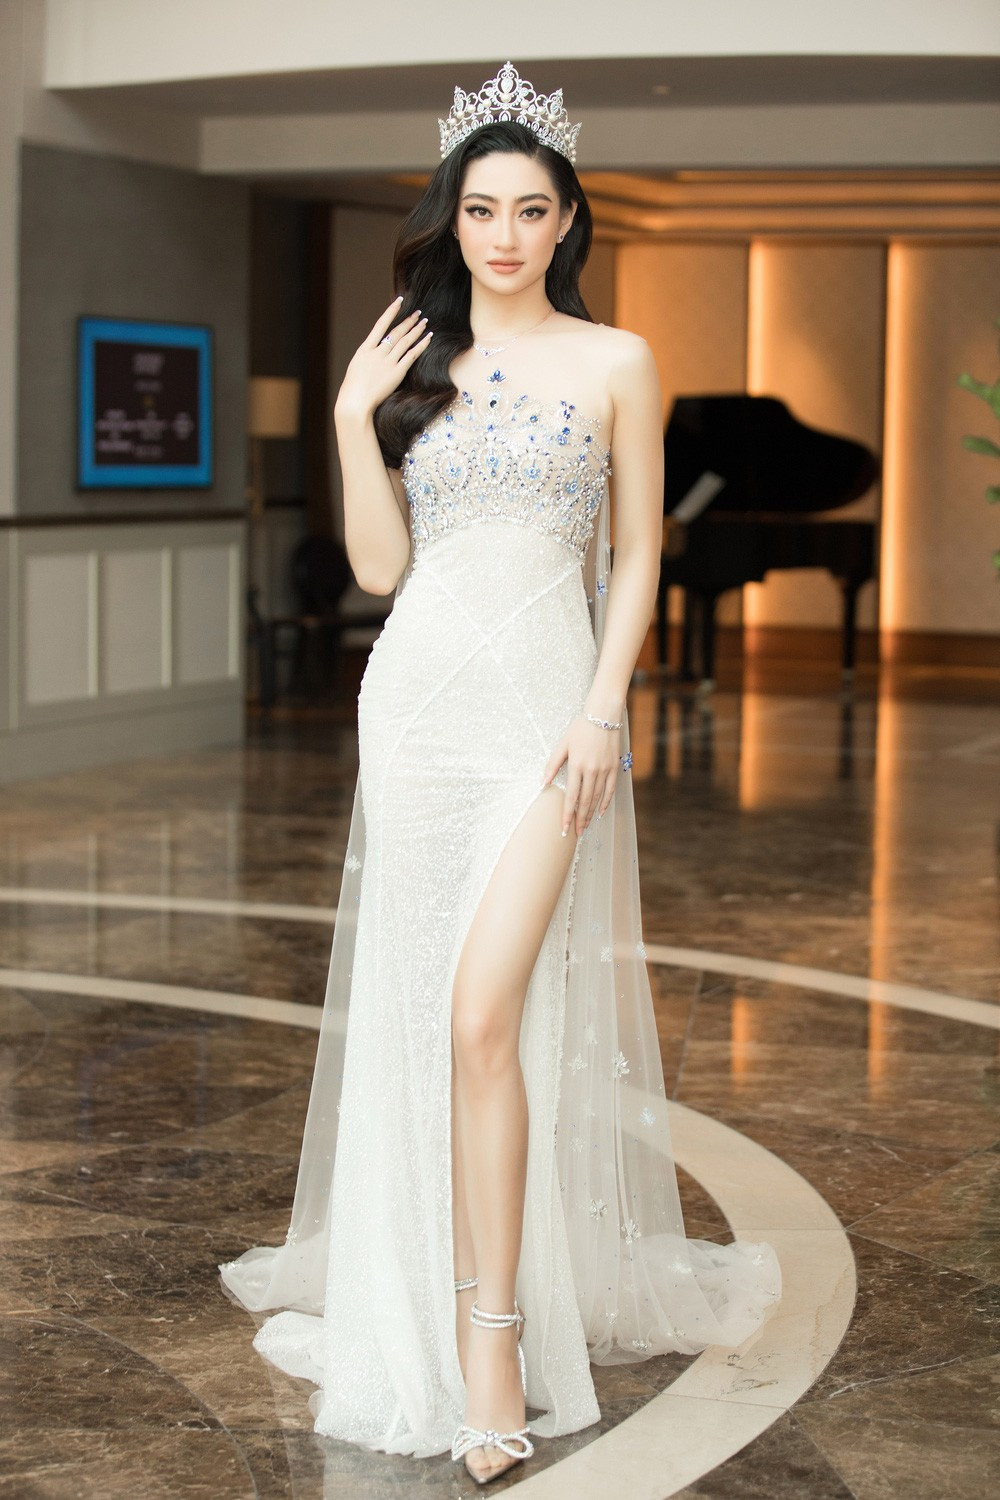 Đỗ Thị Hà nổi bật giữa dàn Hoa hậu tại họp báo Miss World Vietnam 2021 - Ảnh 4.